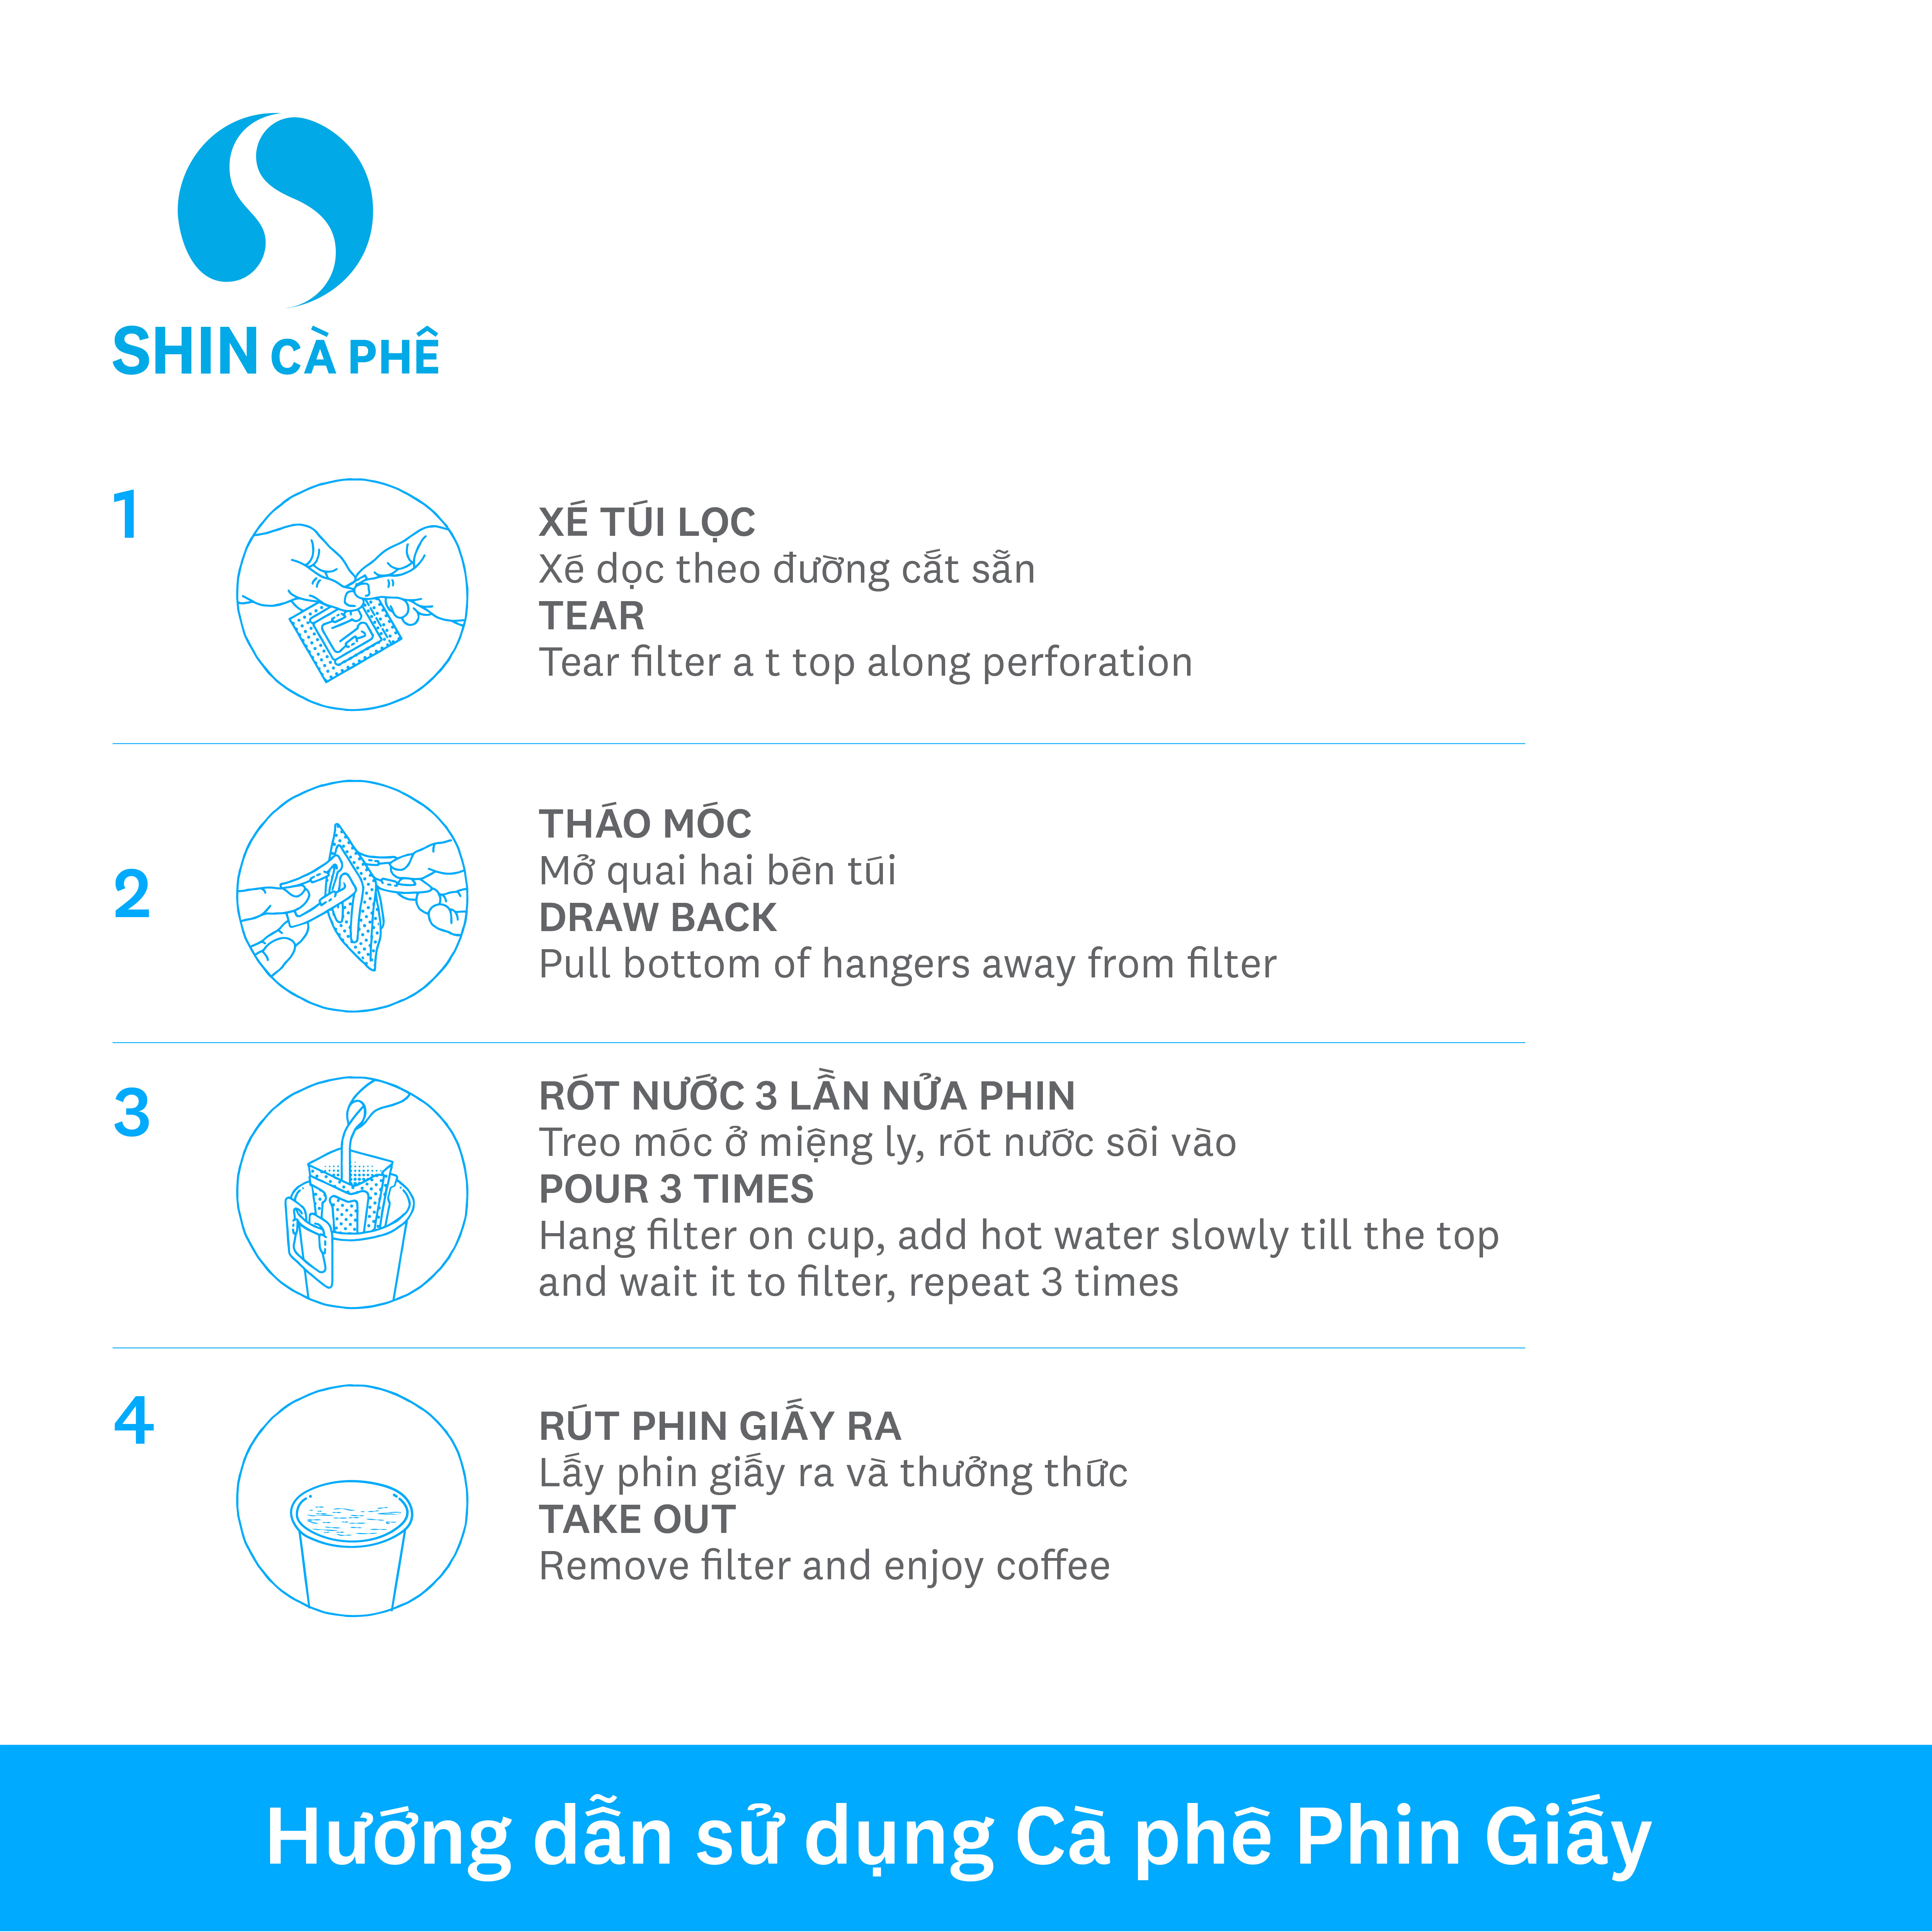 SHIN Cà Phê - Pleiku Blend Phin Giấy tiện lợi hộp 5 gói